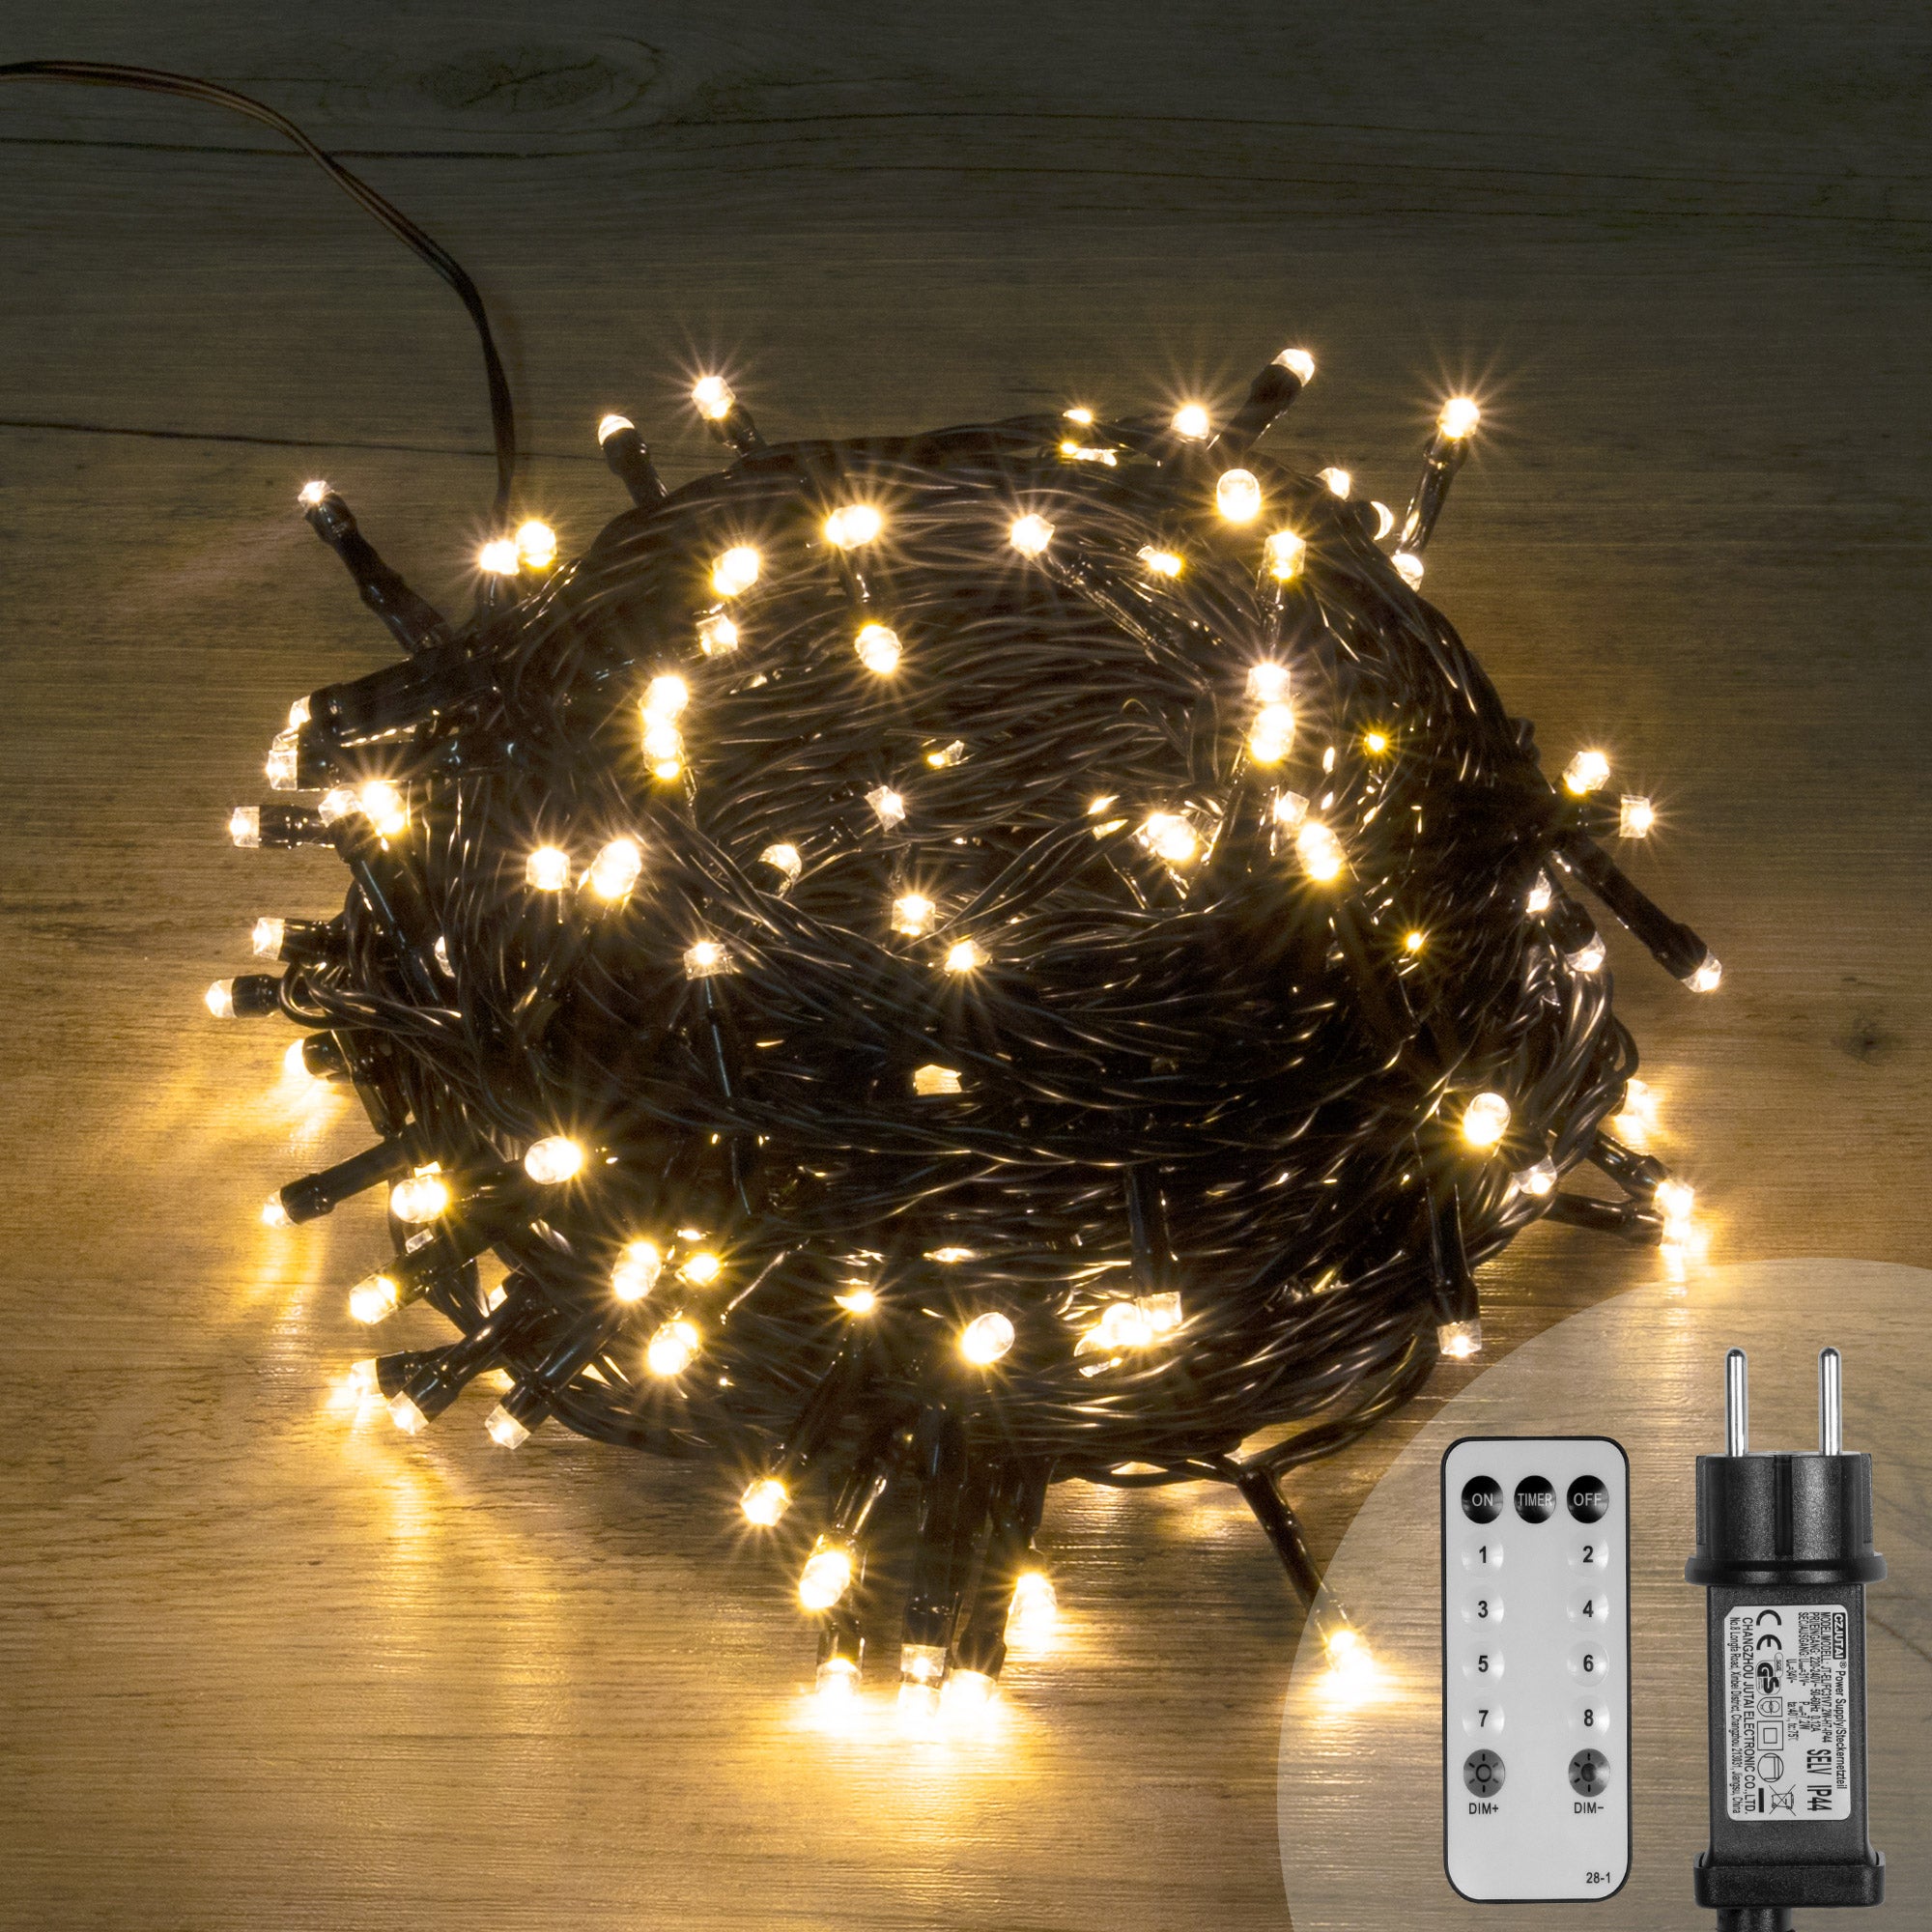 Guirlande lumineuse Noël 750 LED blanc chaud câble transparent intérieur  extérieur 37,5 m